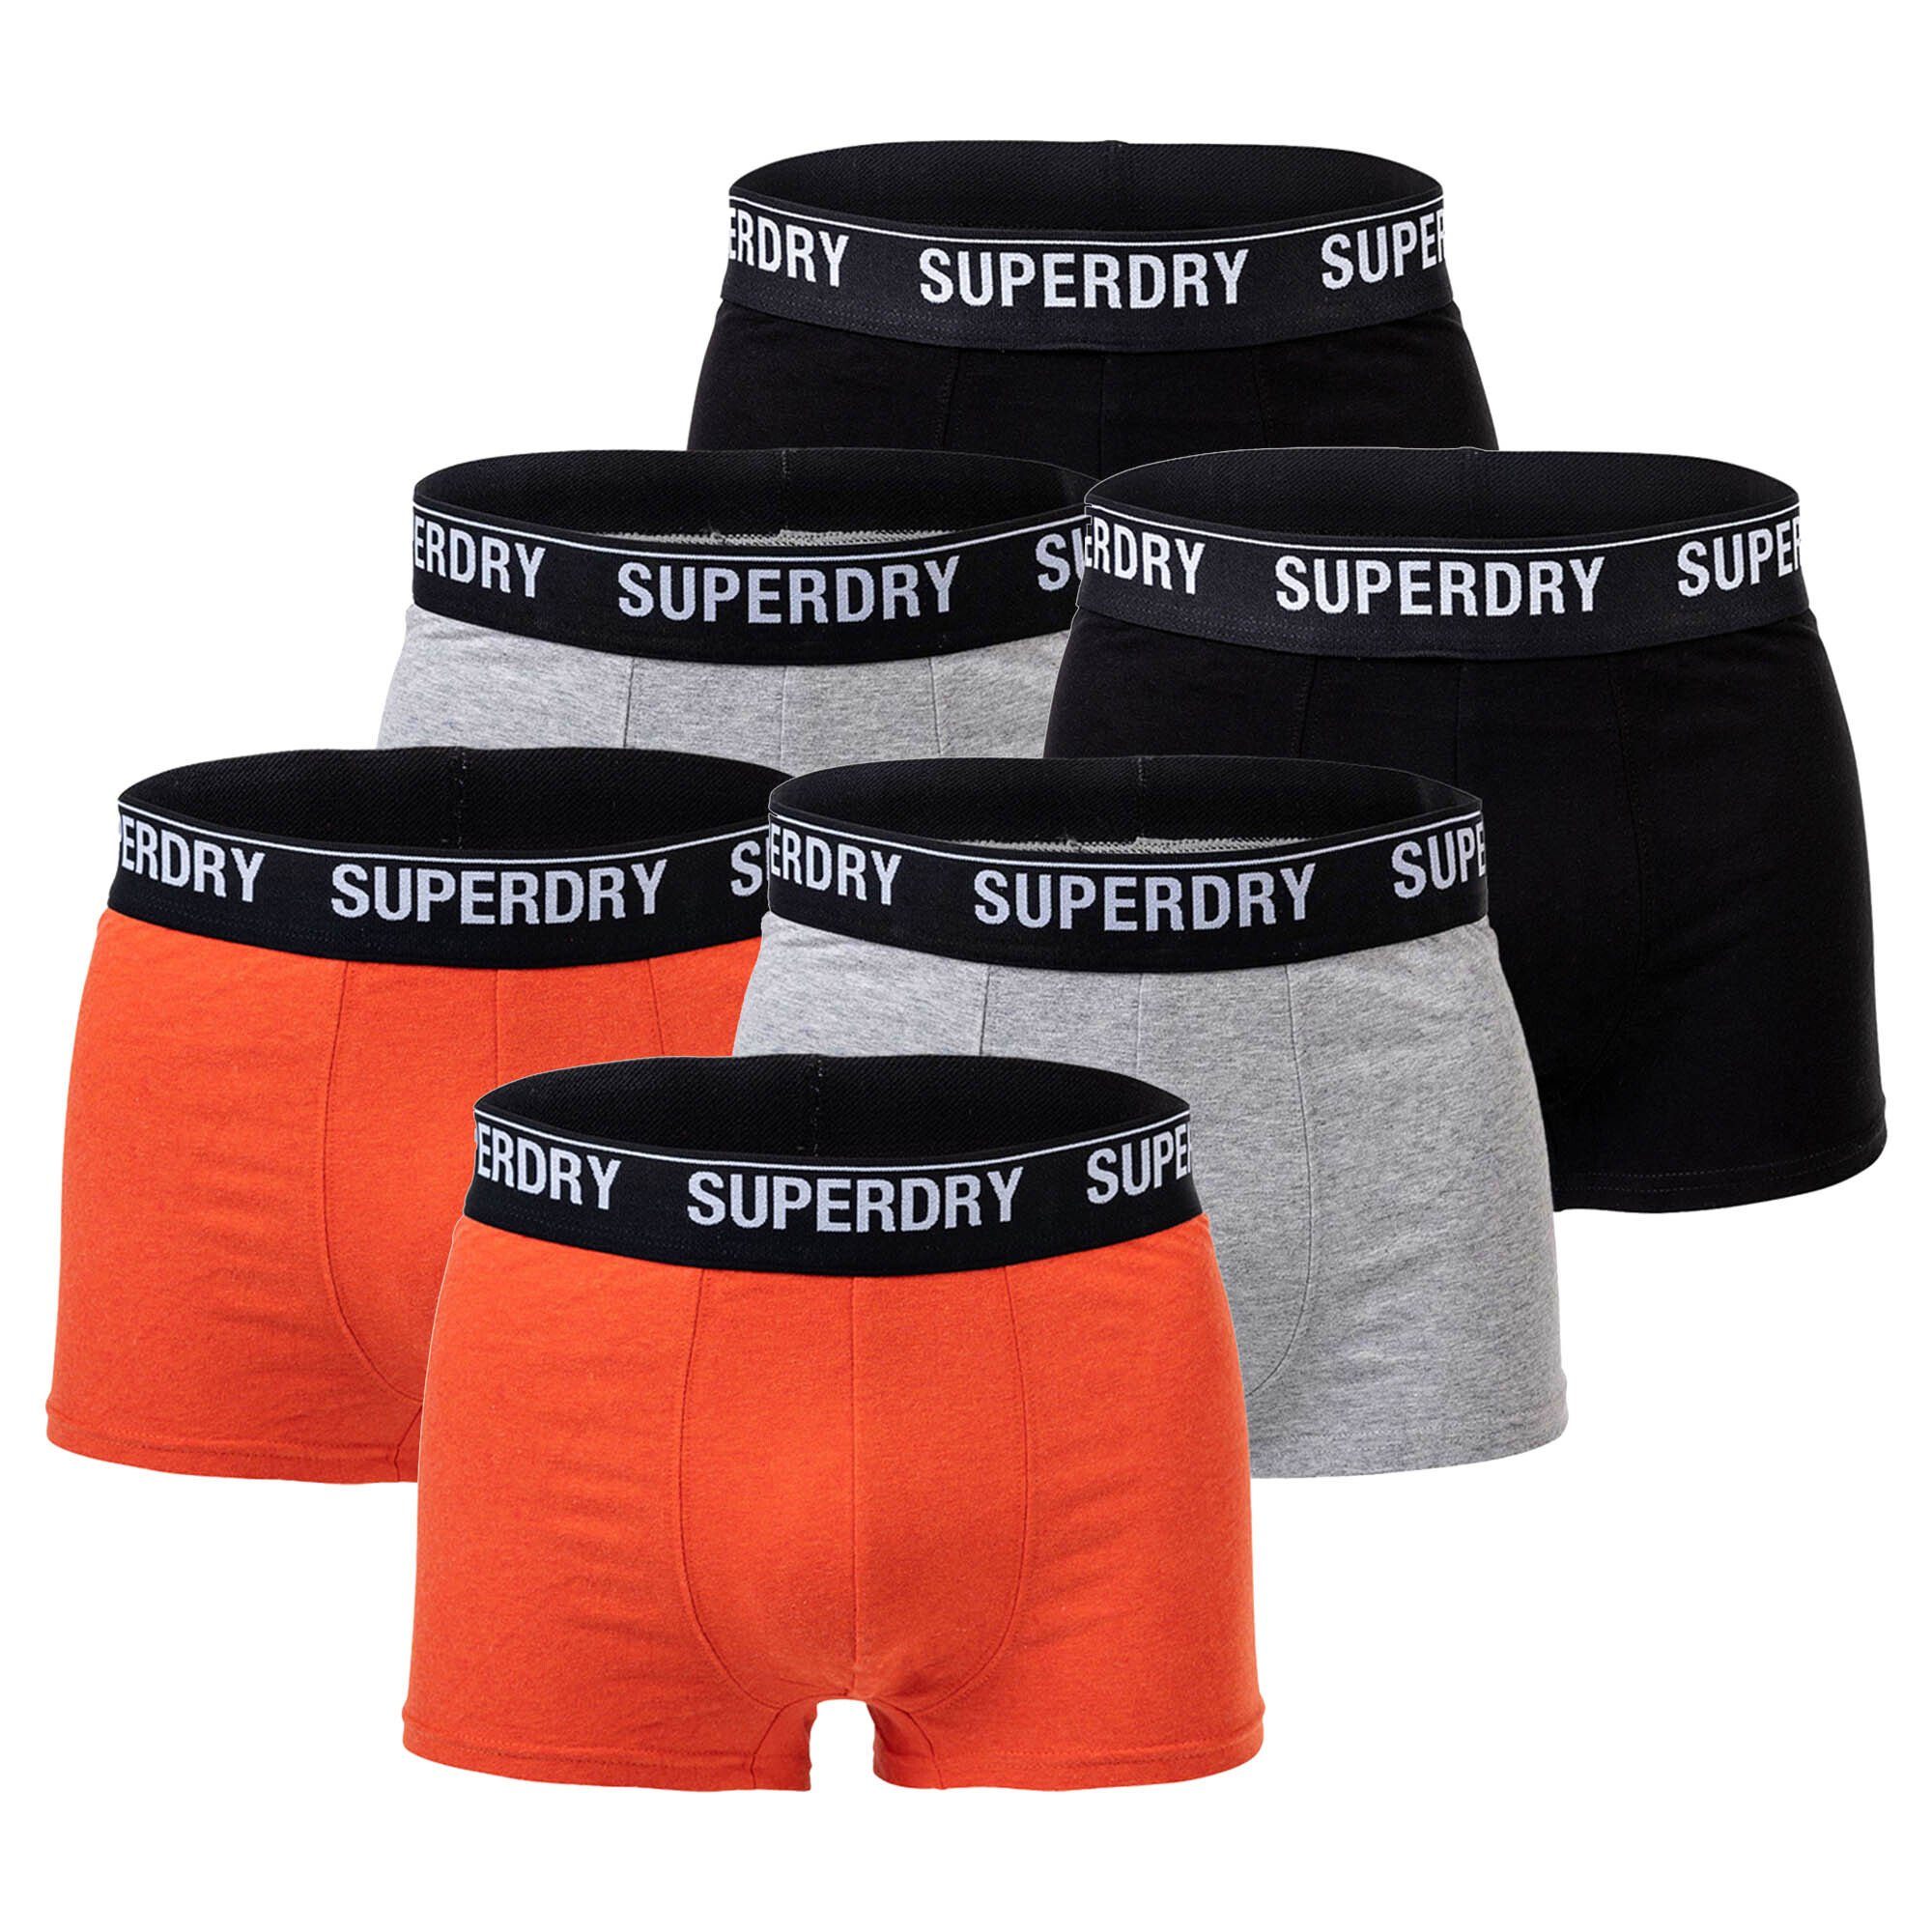 Superdry Boxer Herren Boxershorts - TRUNK MULTI TRIPLE PACK Schwarz/Grau/Orange | Boxershorts